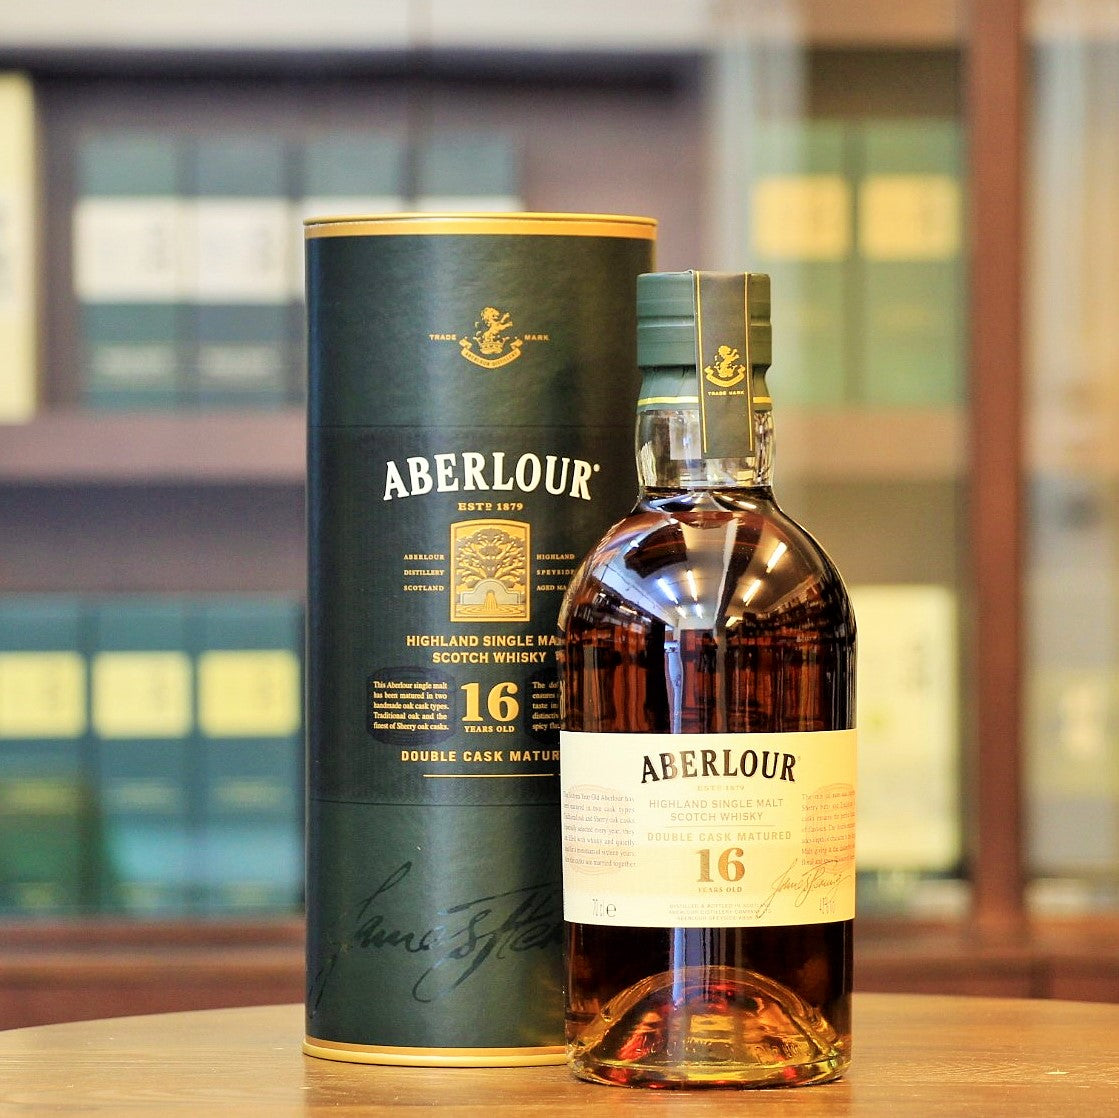 Aberlour Whisky 10 Years - Winestore online, 41,90 €